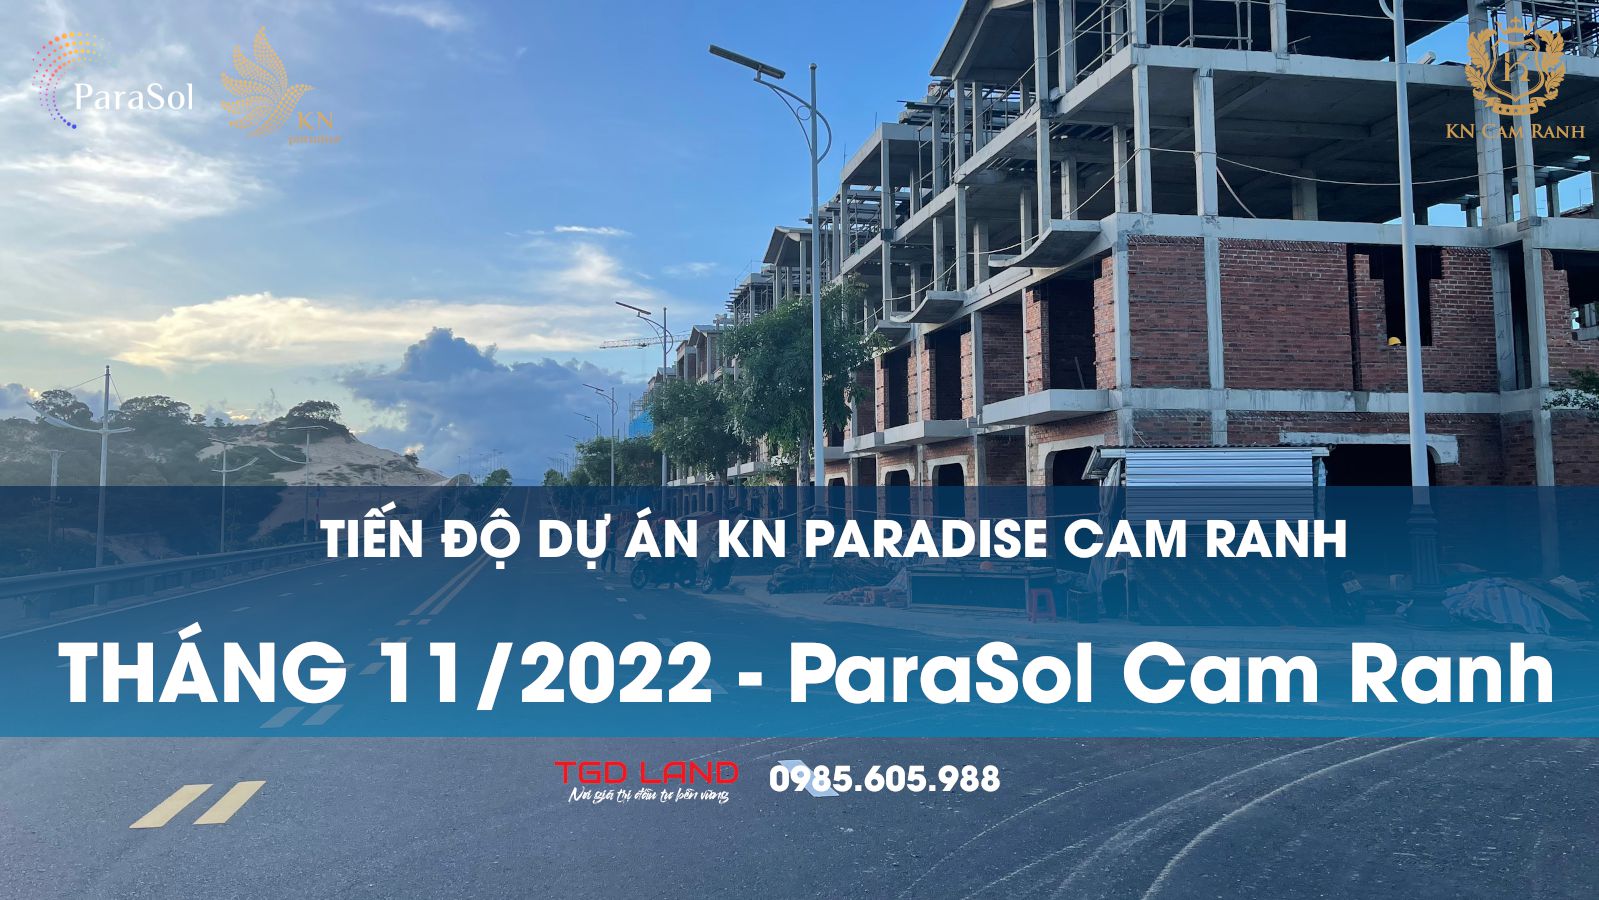 Tiến độ Kn Paradise Tháng 11/2022